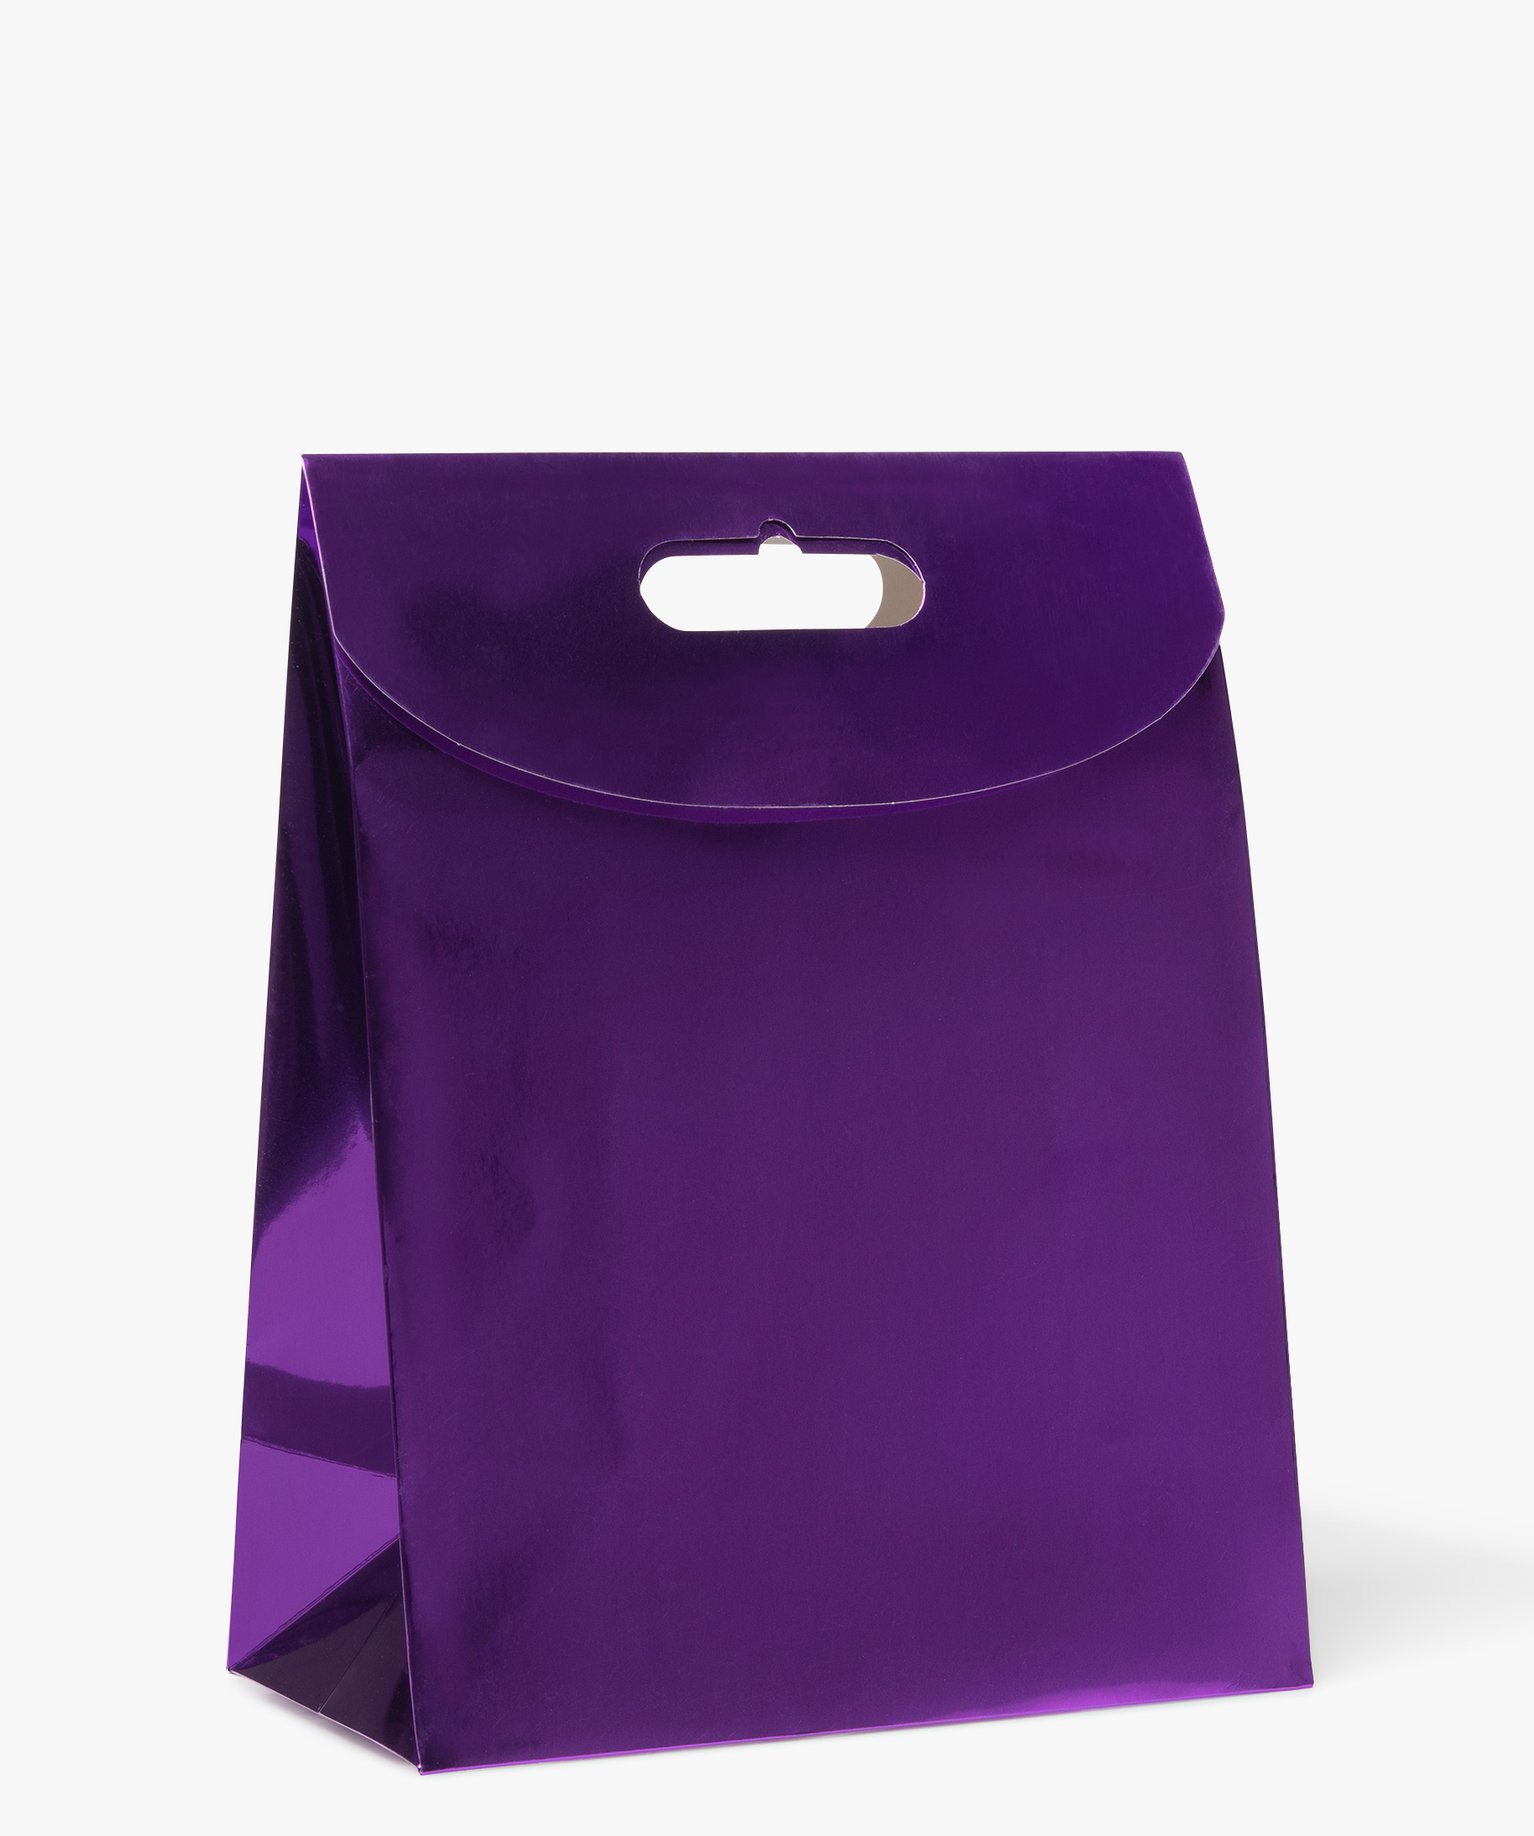 sac cadeau uni avec rabat scratch coloris metallise violet